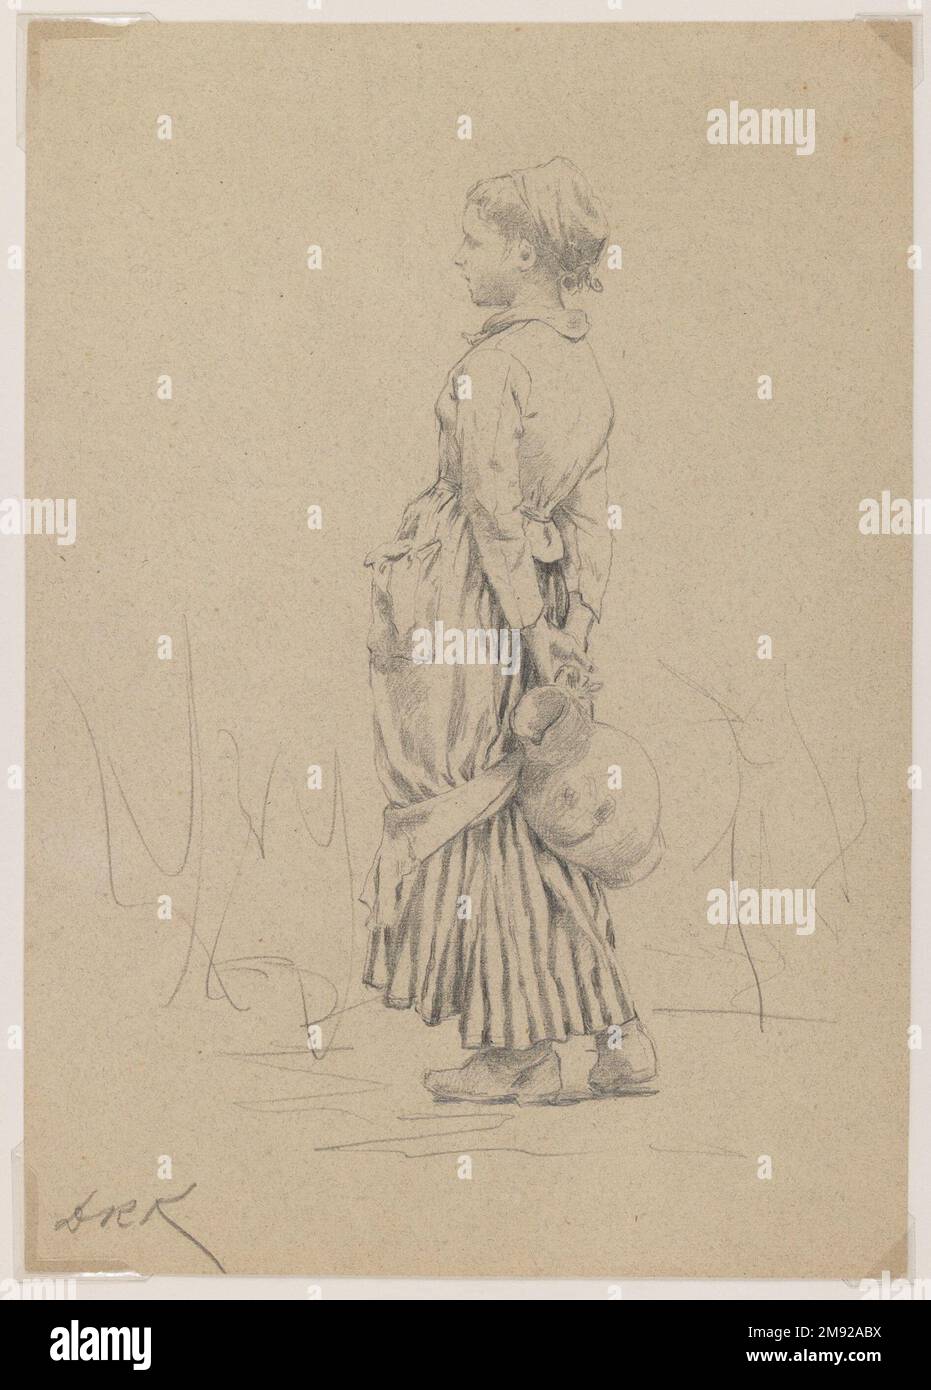 Bauer mit Wasserkrug: Studie für "The well" Daniel Ridgway Knight (amerikanisch, 1839-1924). Bauer mit Wasserkrug: Studie für 'The well', ca. 1880. Graphit auf braunem, mittelschwerem, leicht strukturiertem gewebtem Papier, Blatt: 10 1/8 x 7 1/8 cm (25,7 x 18,1 cm). Daniel Ridgway Knight schuf diese sorgfältig ausgeführte Zeichnung, um die Pose eines Bauernmädchens und die Details des Kostüms für sein Gemälde des Brunnens zu etablieren (siehe Abbildung). Das geschwungene Schaukeln ihres Körpers, während sie eine Kanne hinter ihrem Rücken hält, vermittelt eine schüchterne Haltung. Knight war das Ergebnis einer strengen akademischen Ausbildung Stockfoto